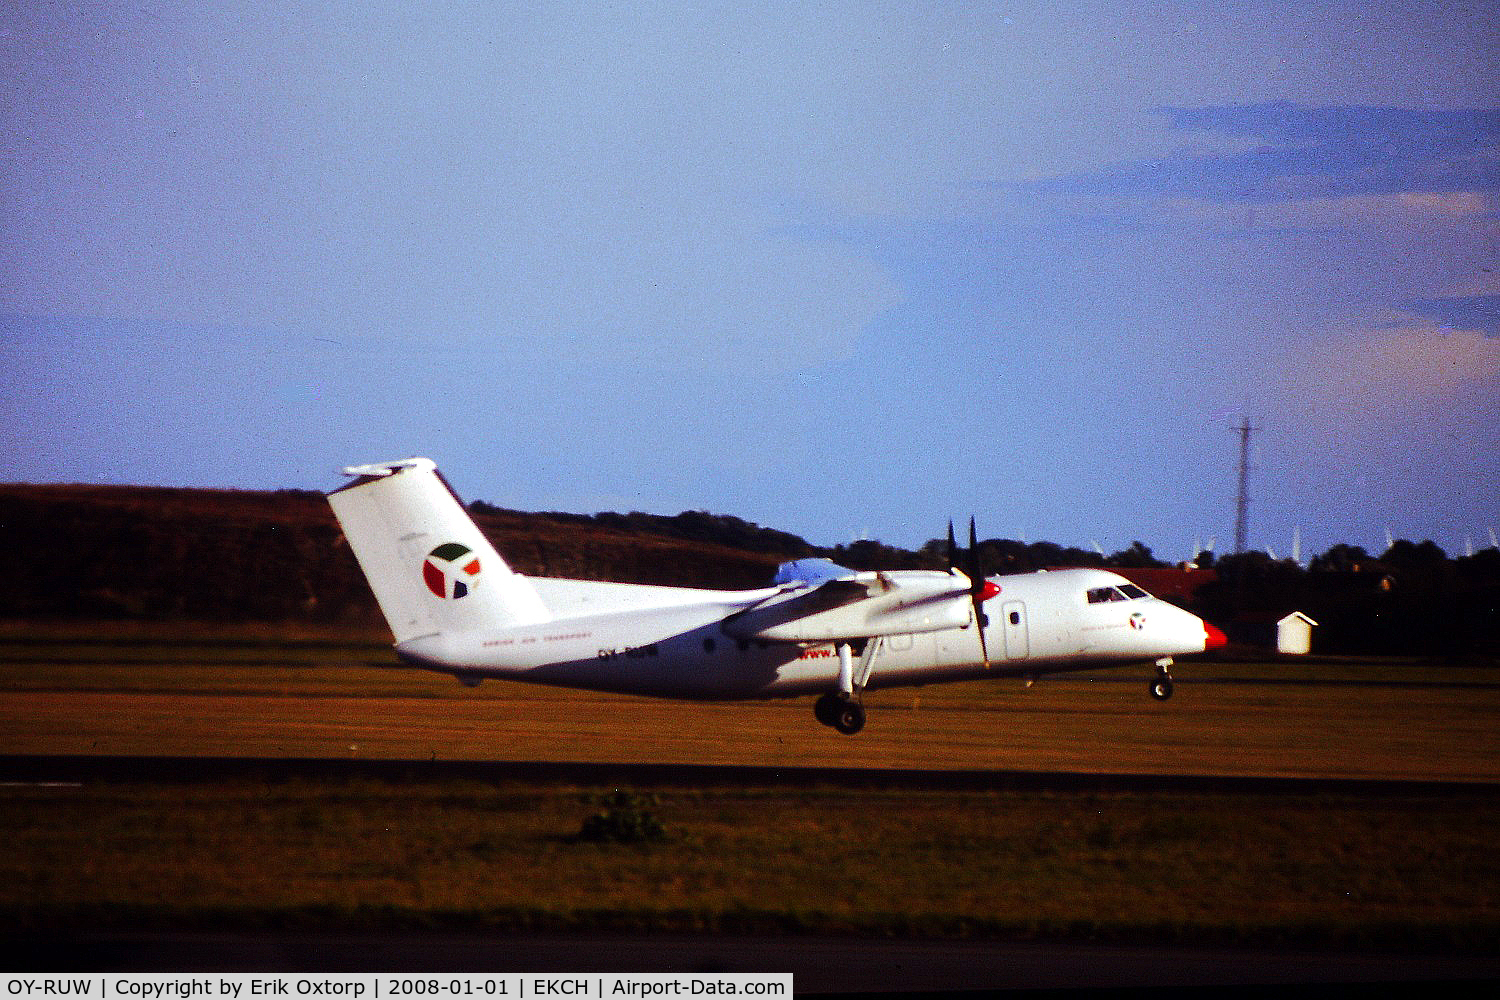 OY-RUW, 1986 De Havilland Canada DHC-8-102 Dash 8 C/N 060, OY-RUW just took off rw 22R, SEP12